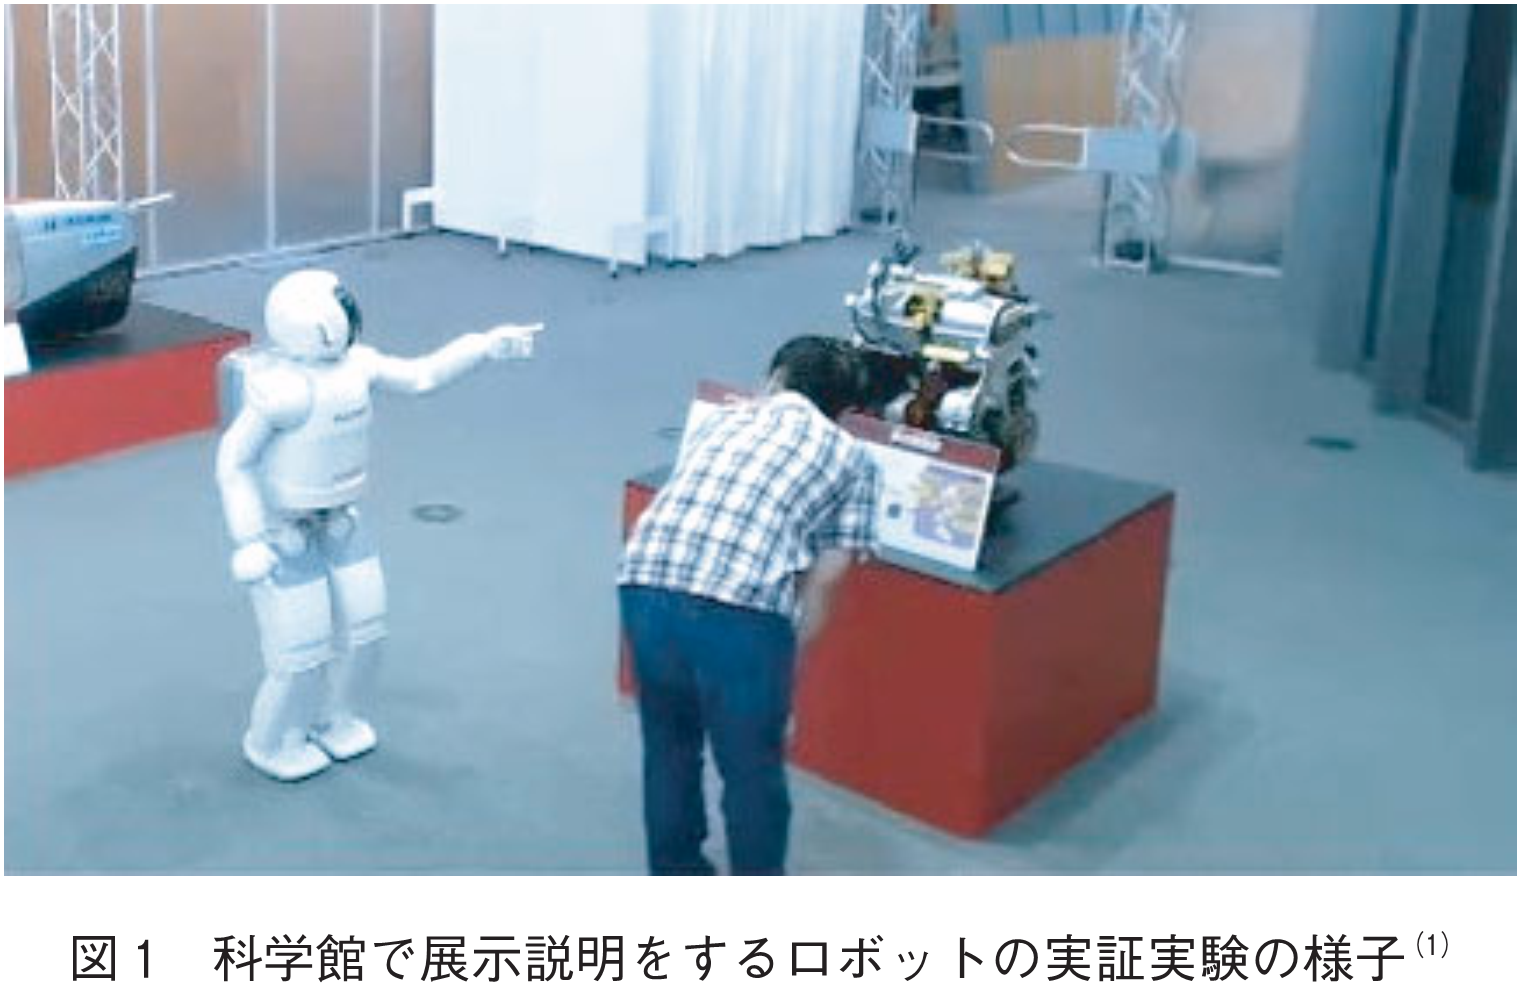 図1　科学館で展示説明をするロボットの実証実験の様子(1)